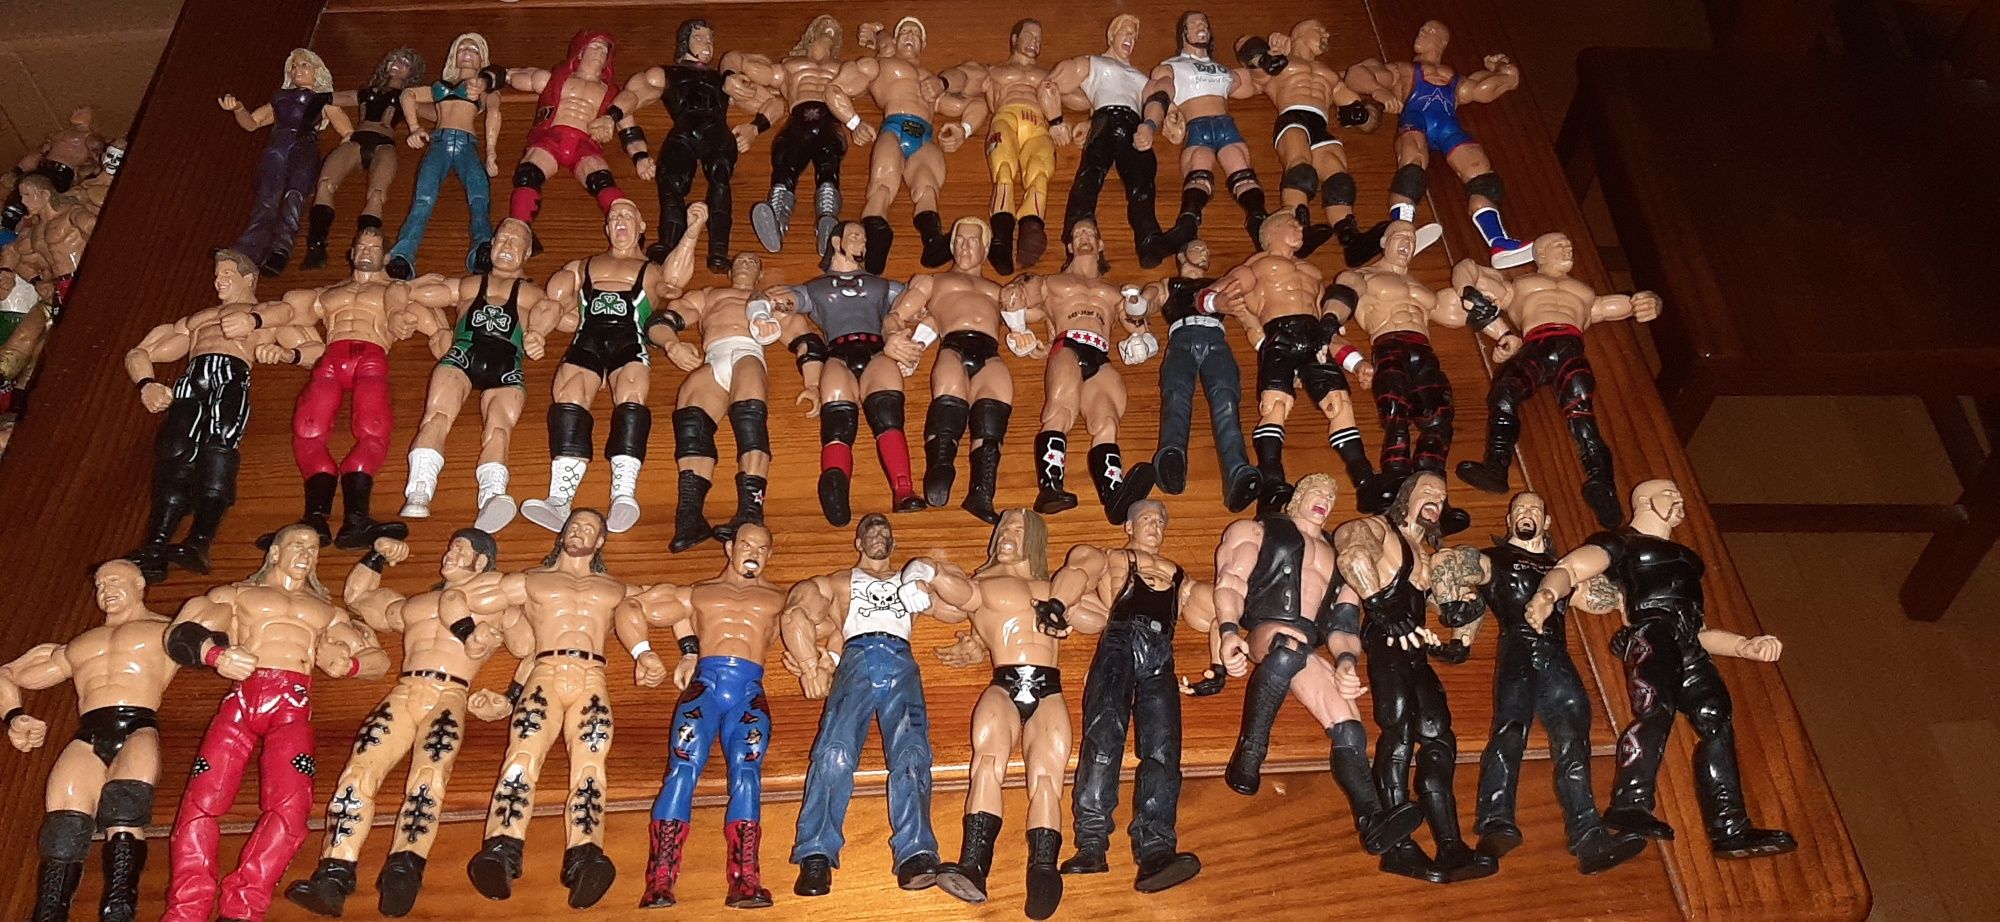 36 figuras/bonecos Wwe-wrestling